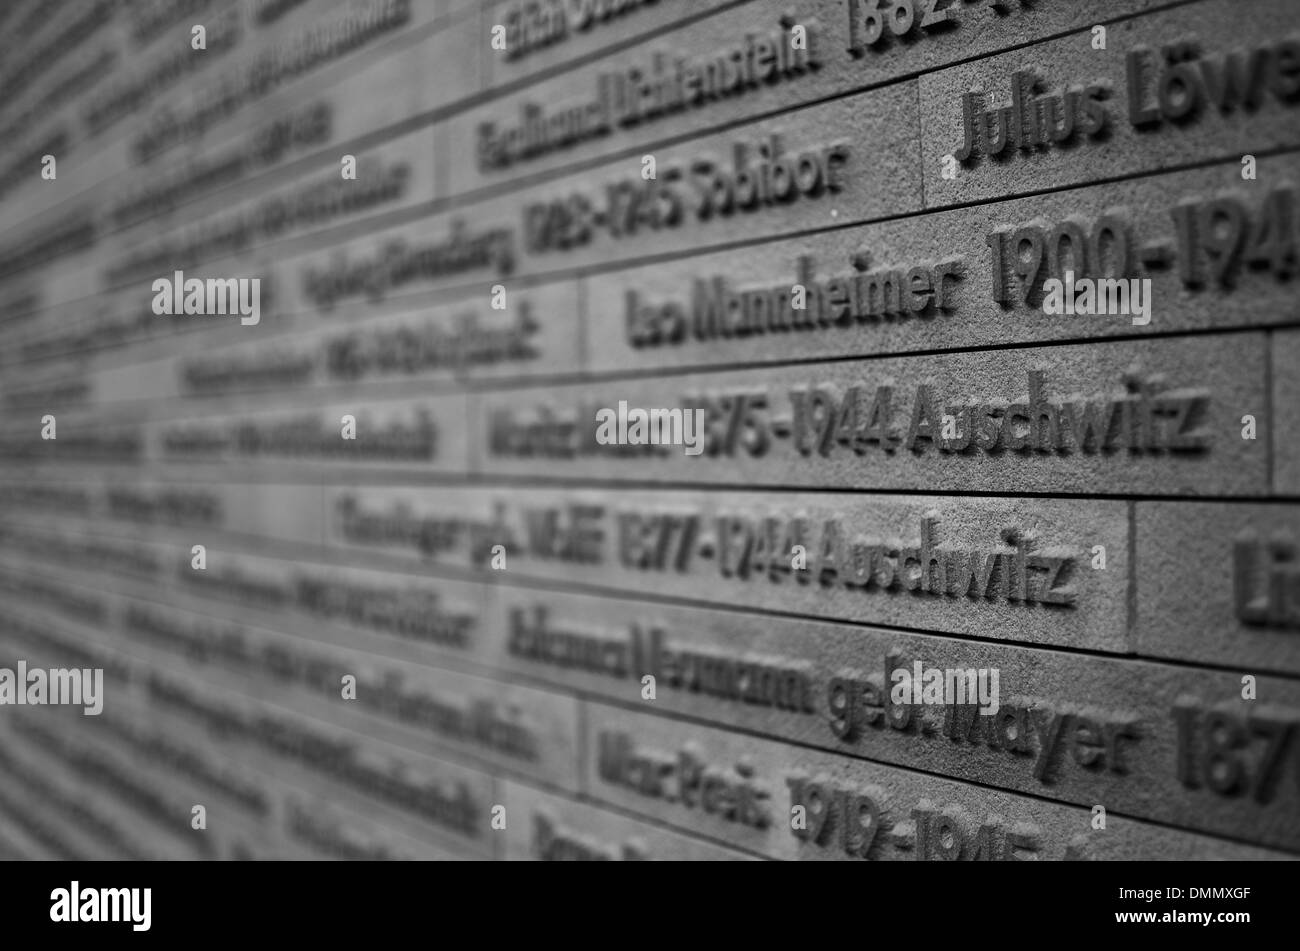 Germany, Wiesbaden, Memorial old synagoge Michelsberg Stock Photo